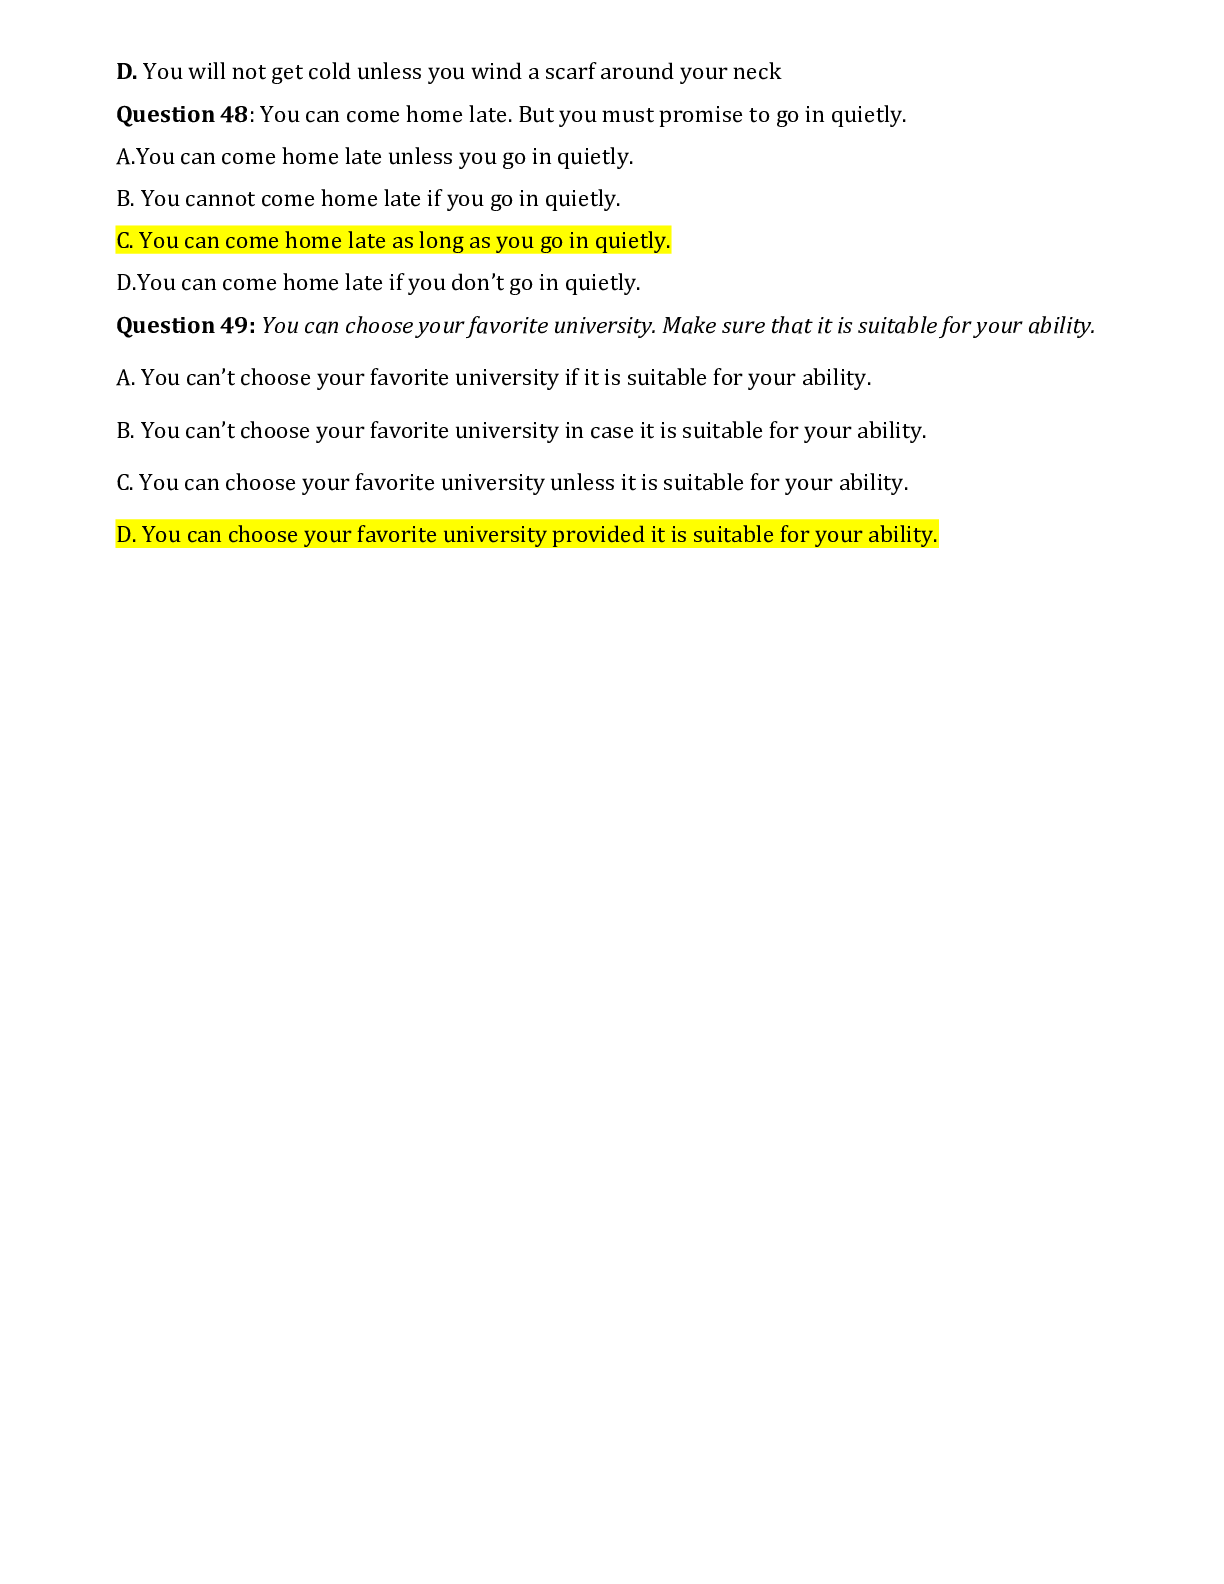 Chuyên đề: Câu điều kiện môn Tiếng Anh ôn thi THPTQG (trang 6)